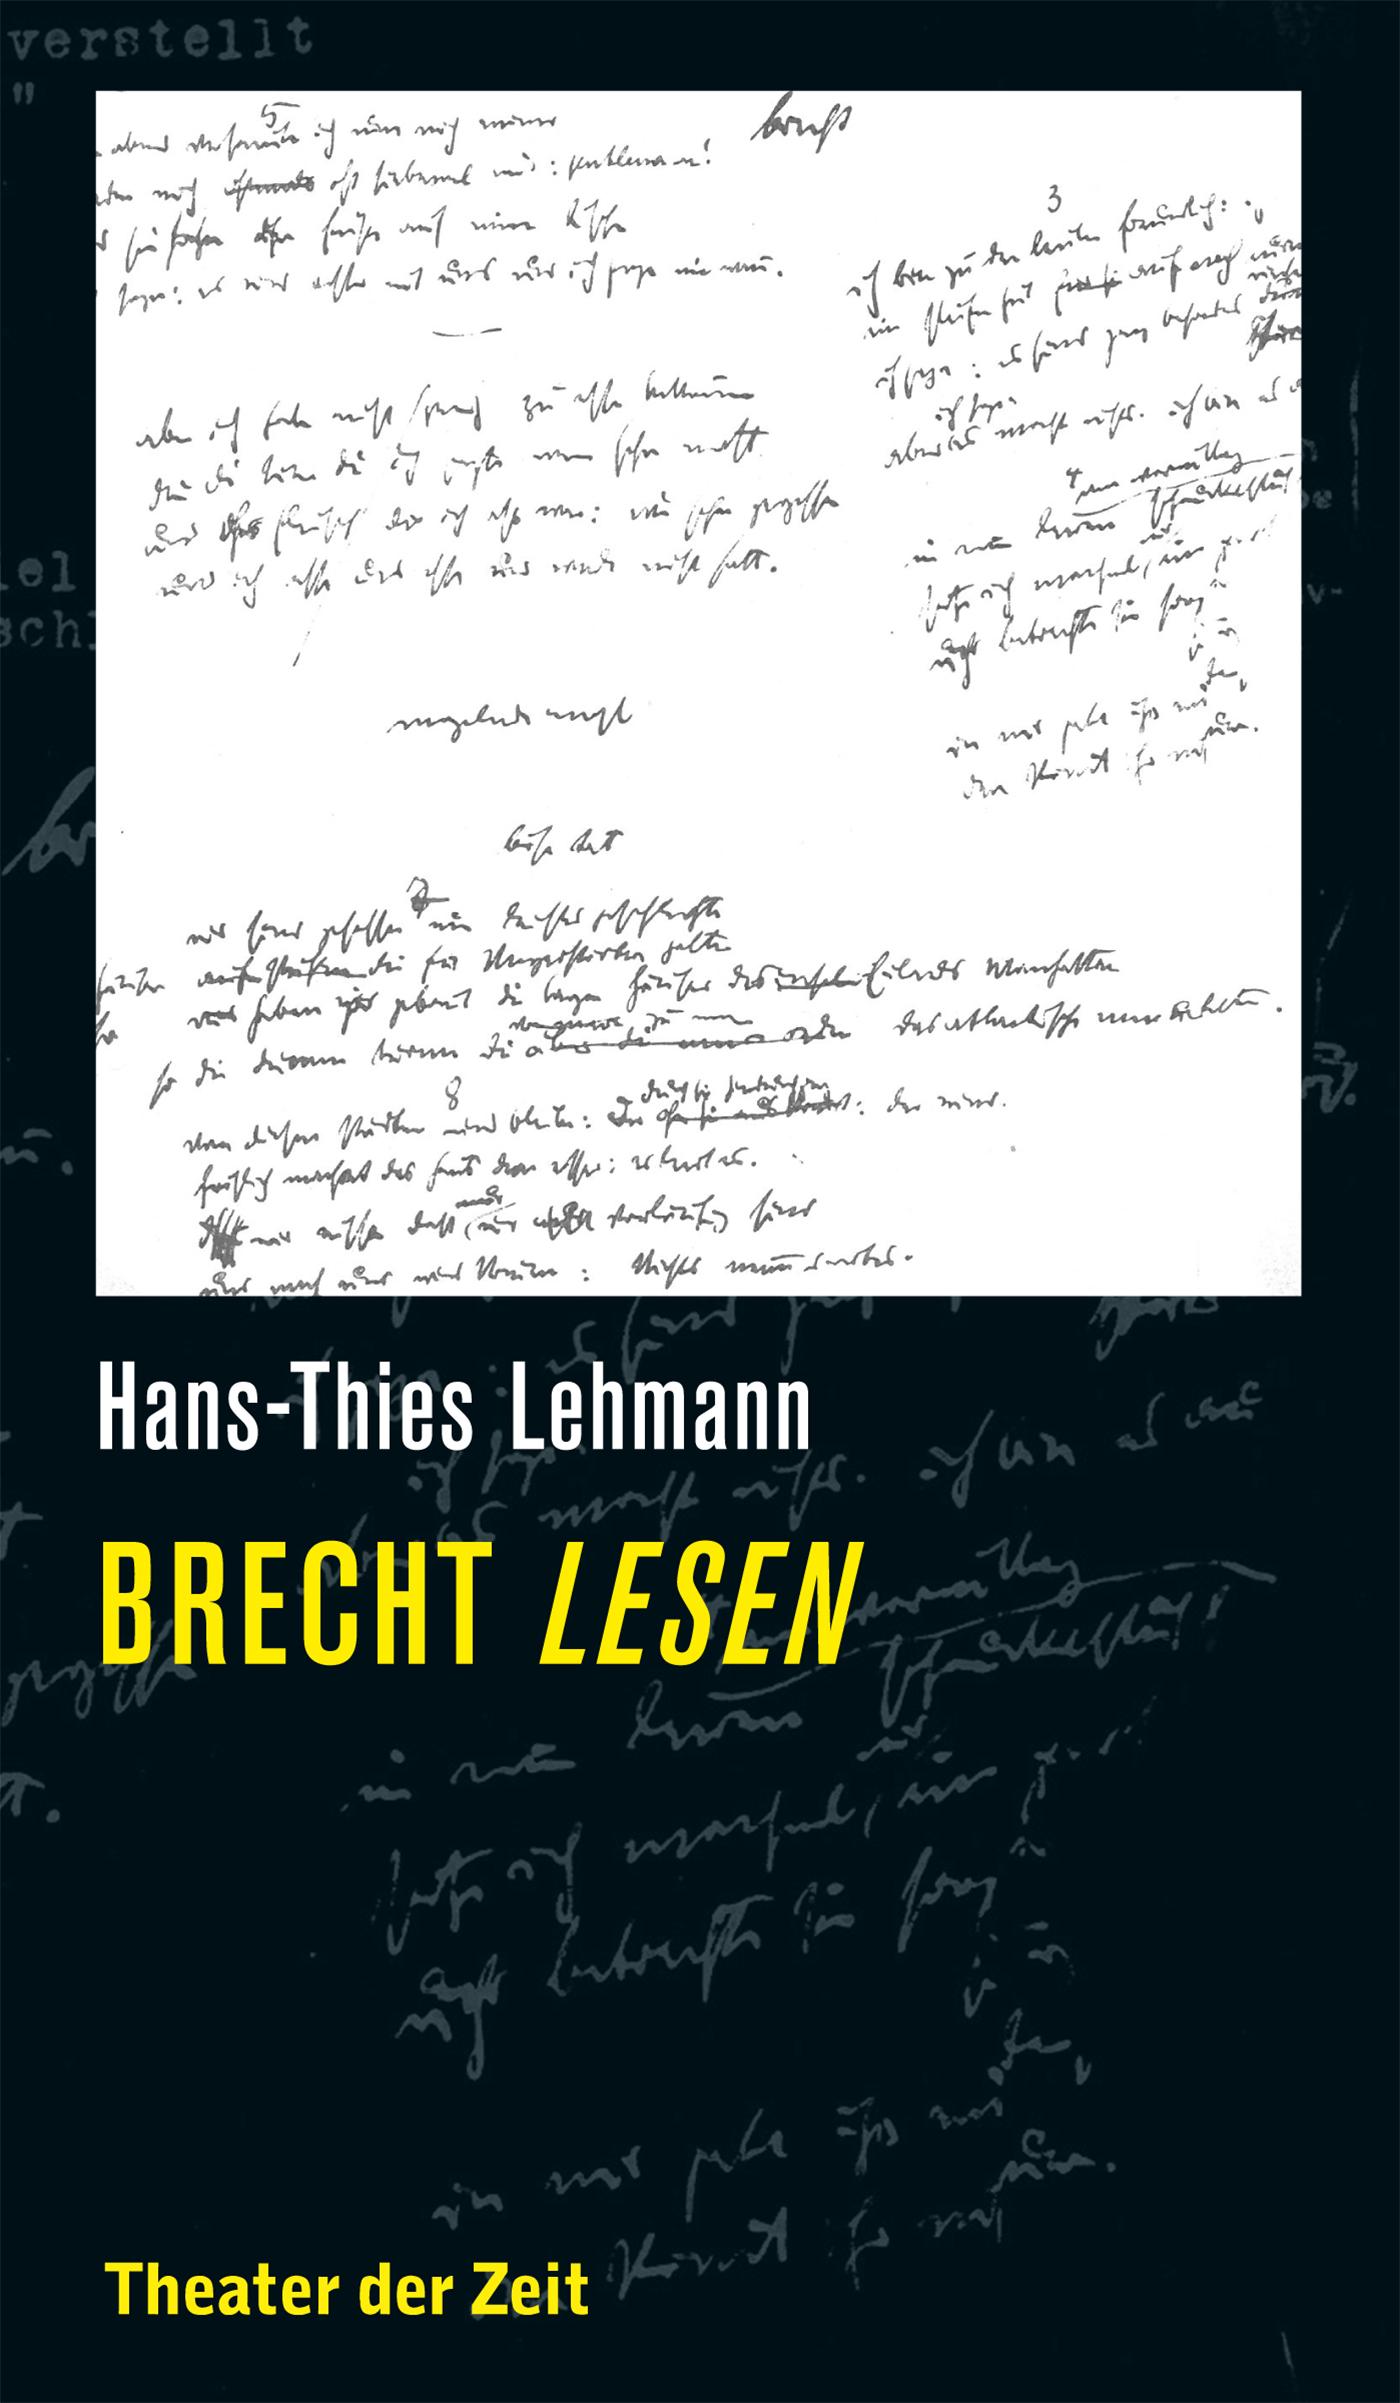 Recherchen 123 "Brecht lesen"